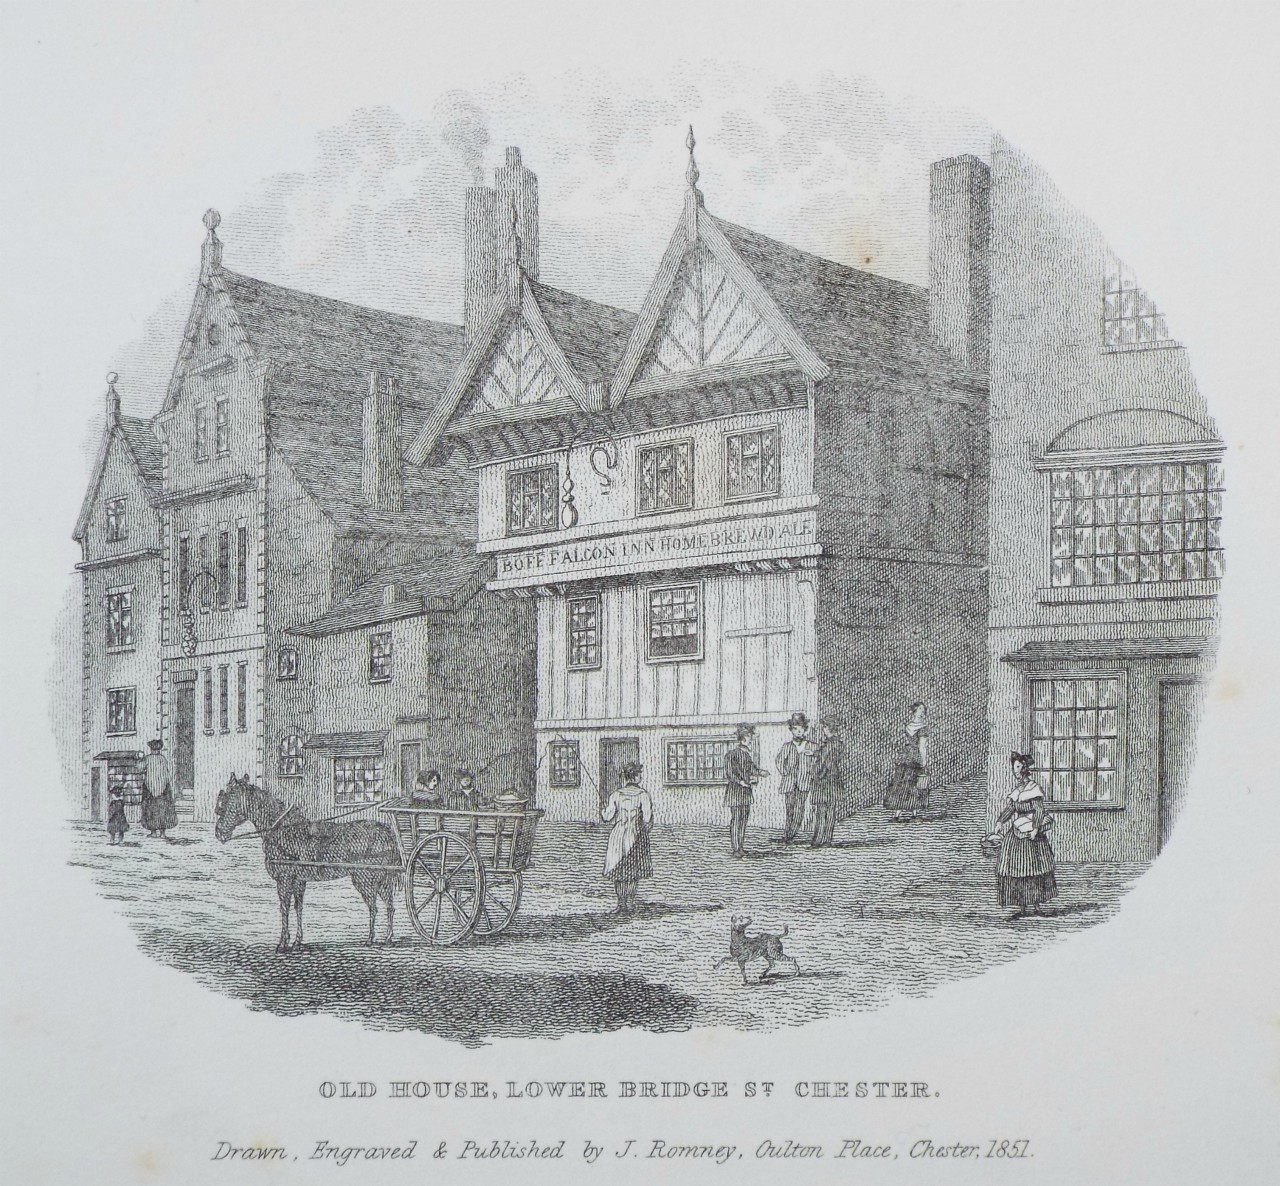 Print - Old House, Lower Bridge St. Chester. - Romney